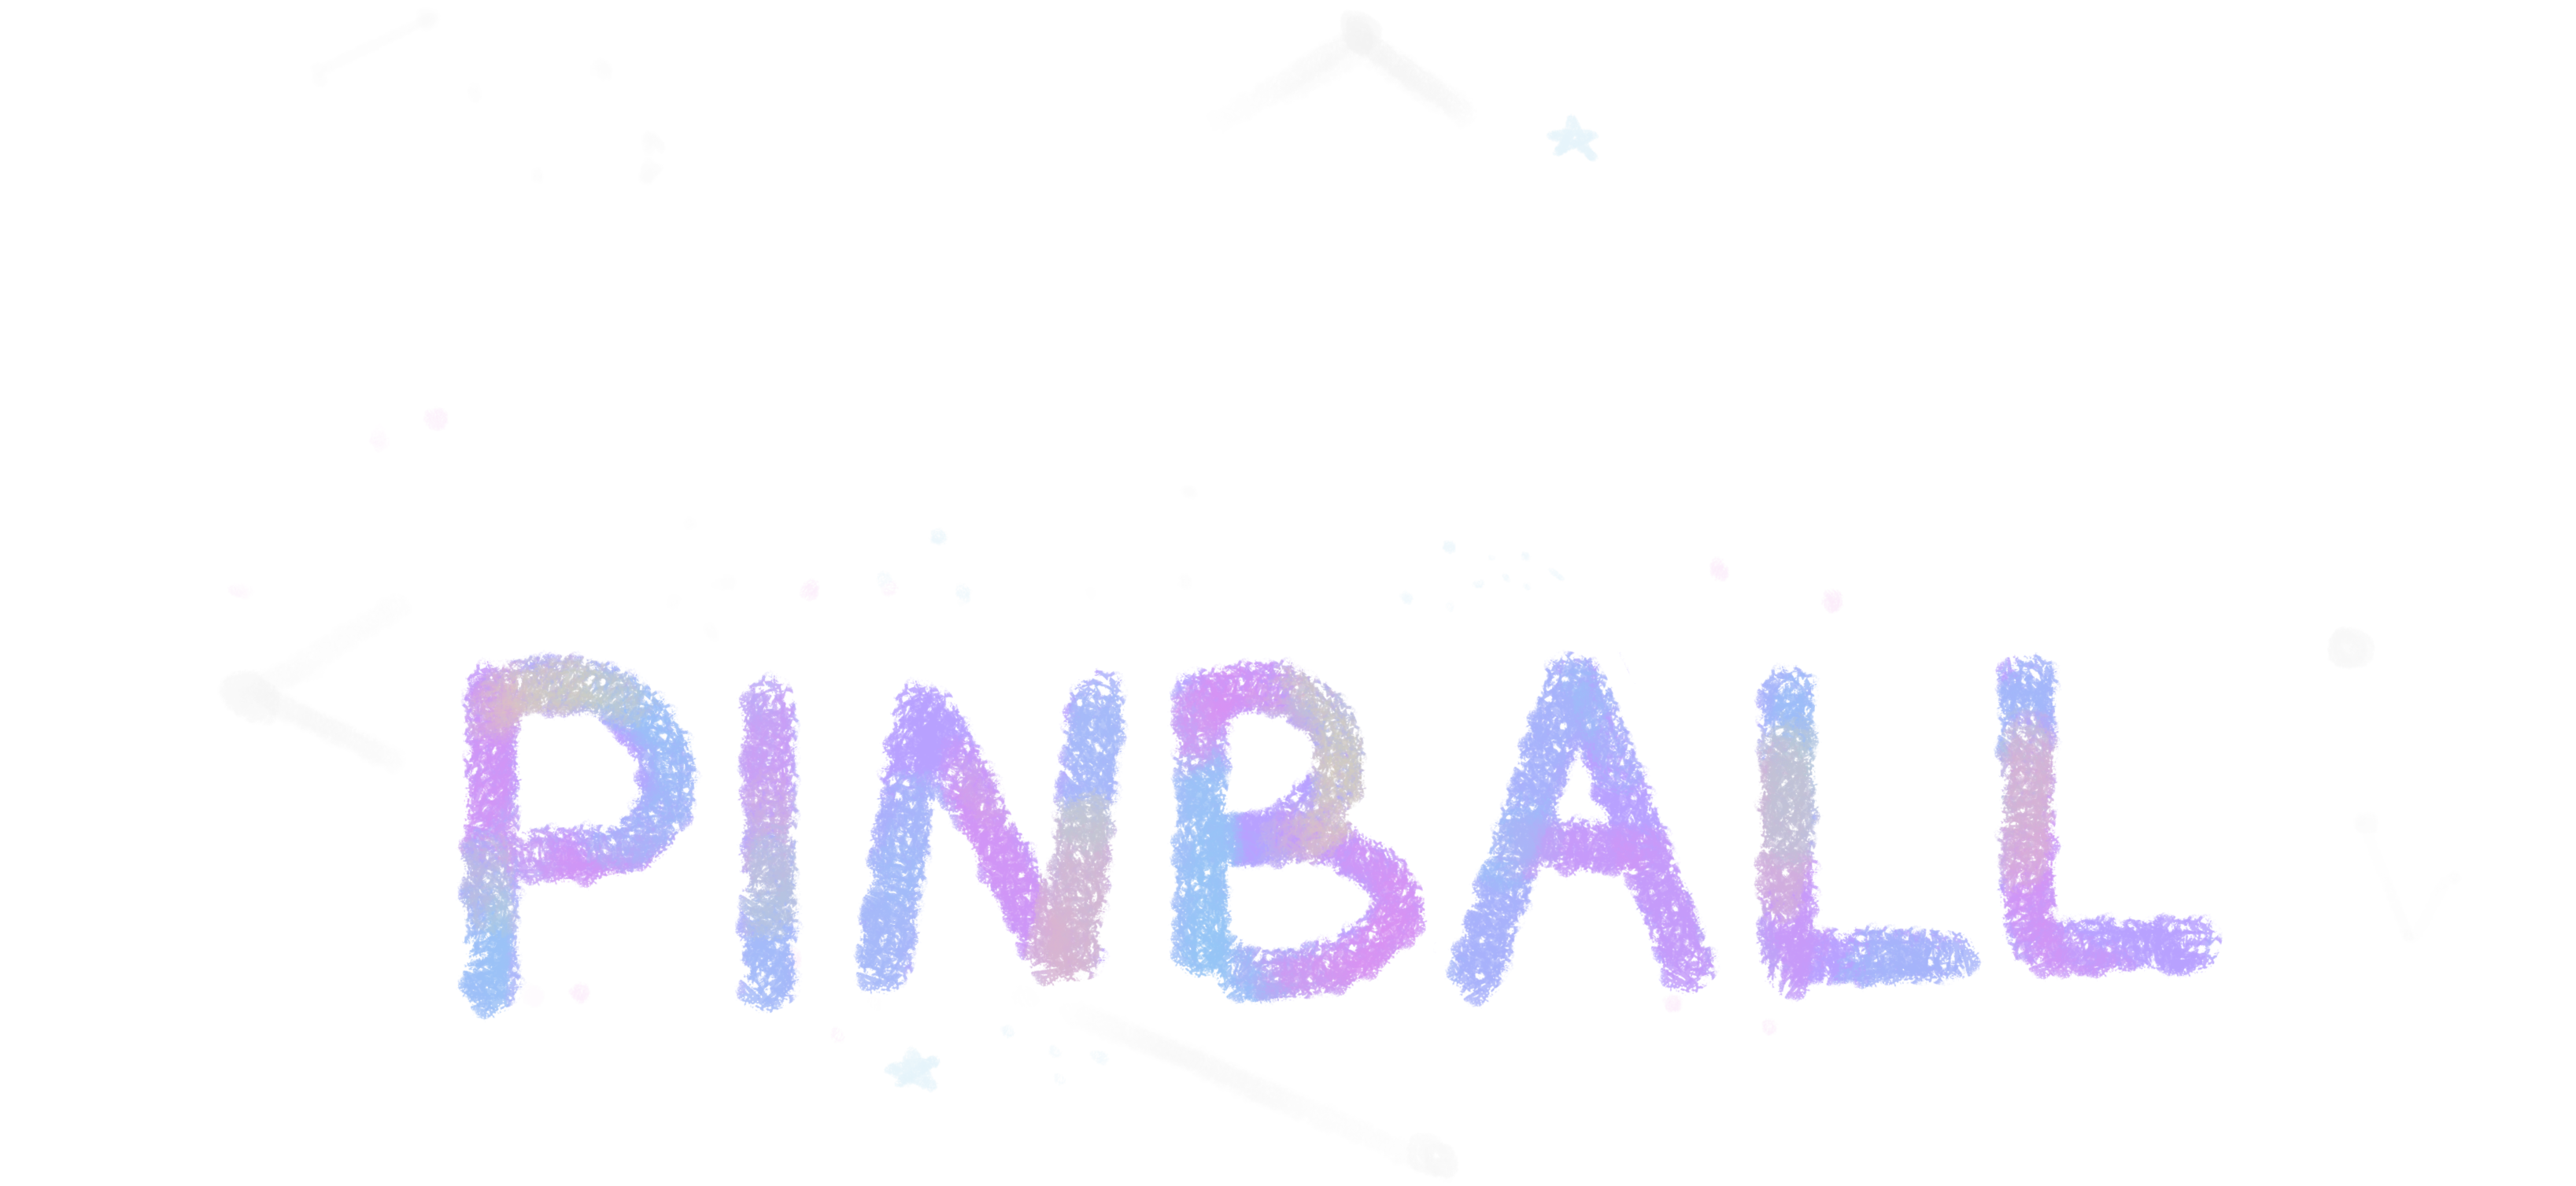 Constellation Pinball